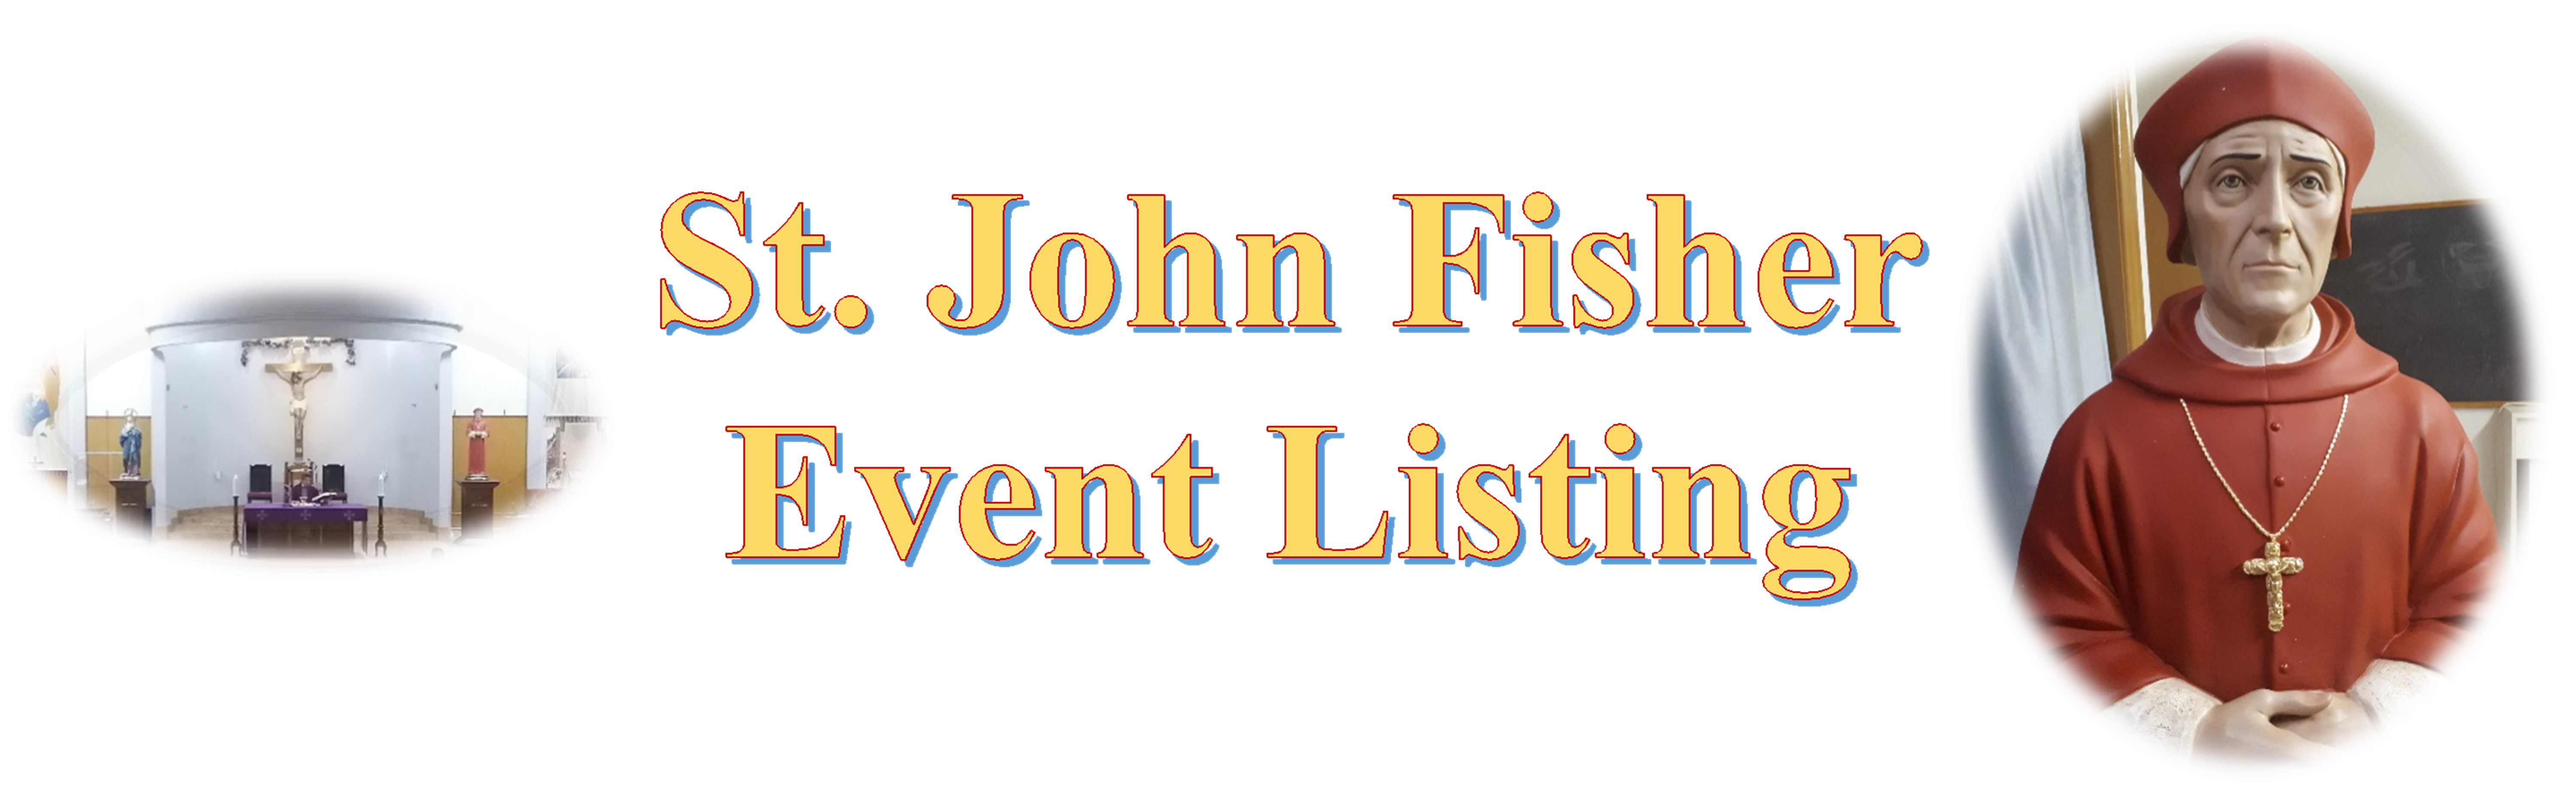 St John Fisher Event Listing Banner